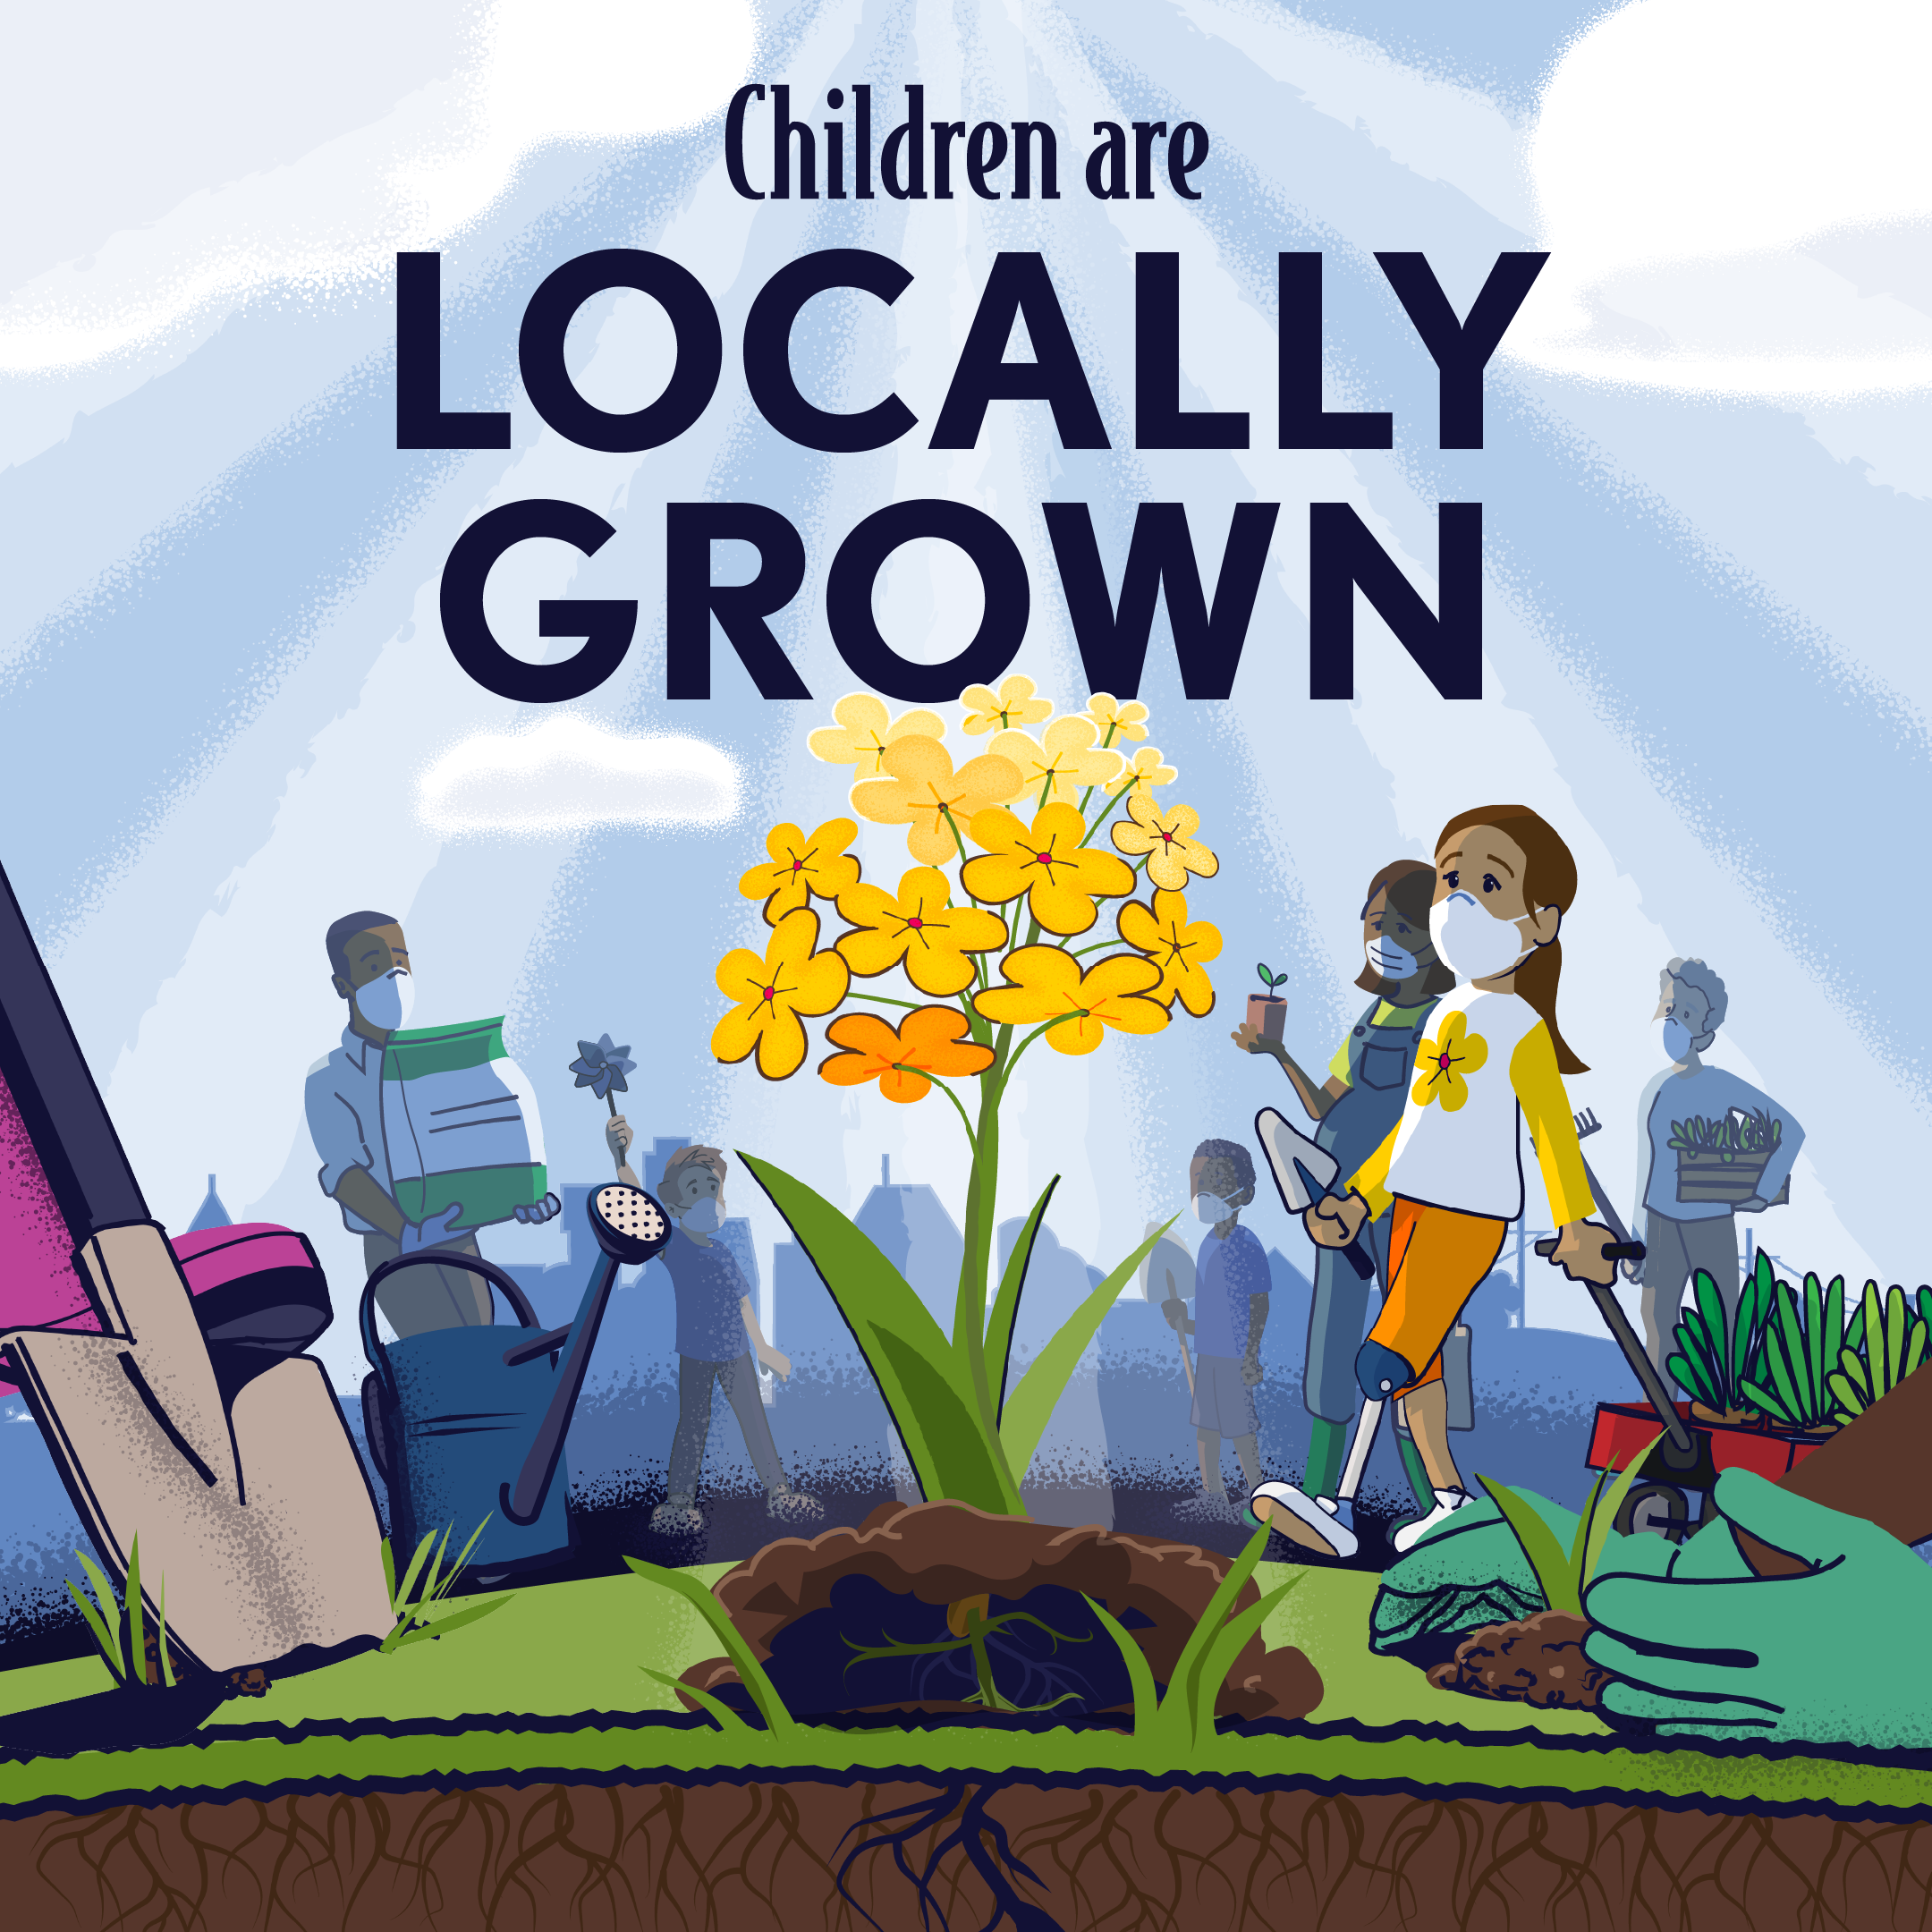 Children are locally grown